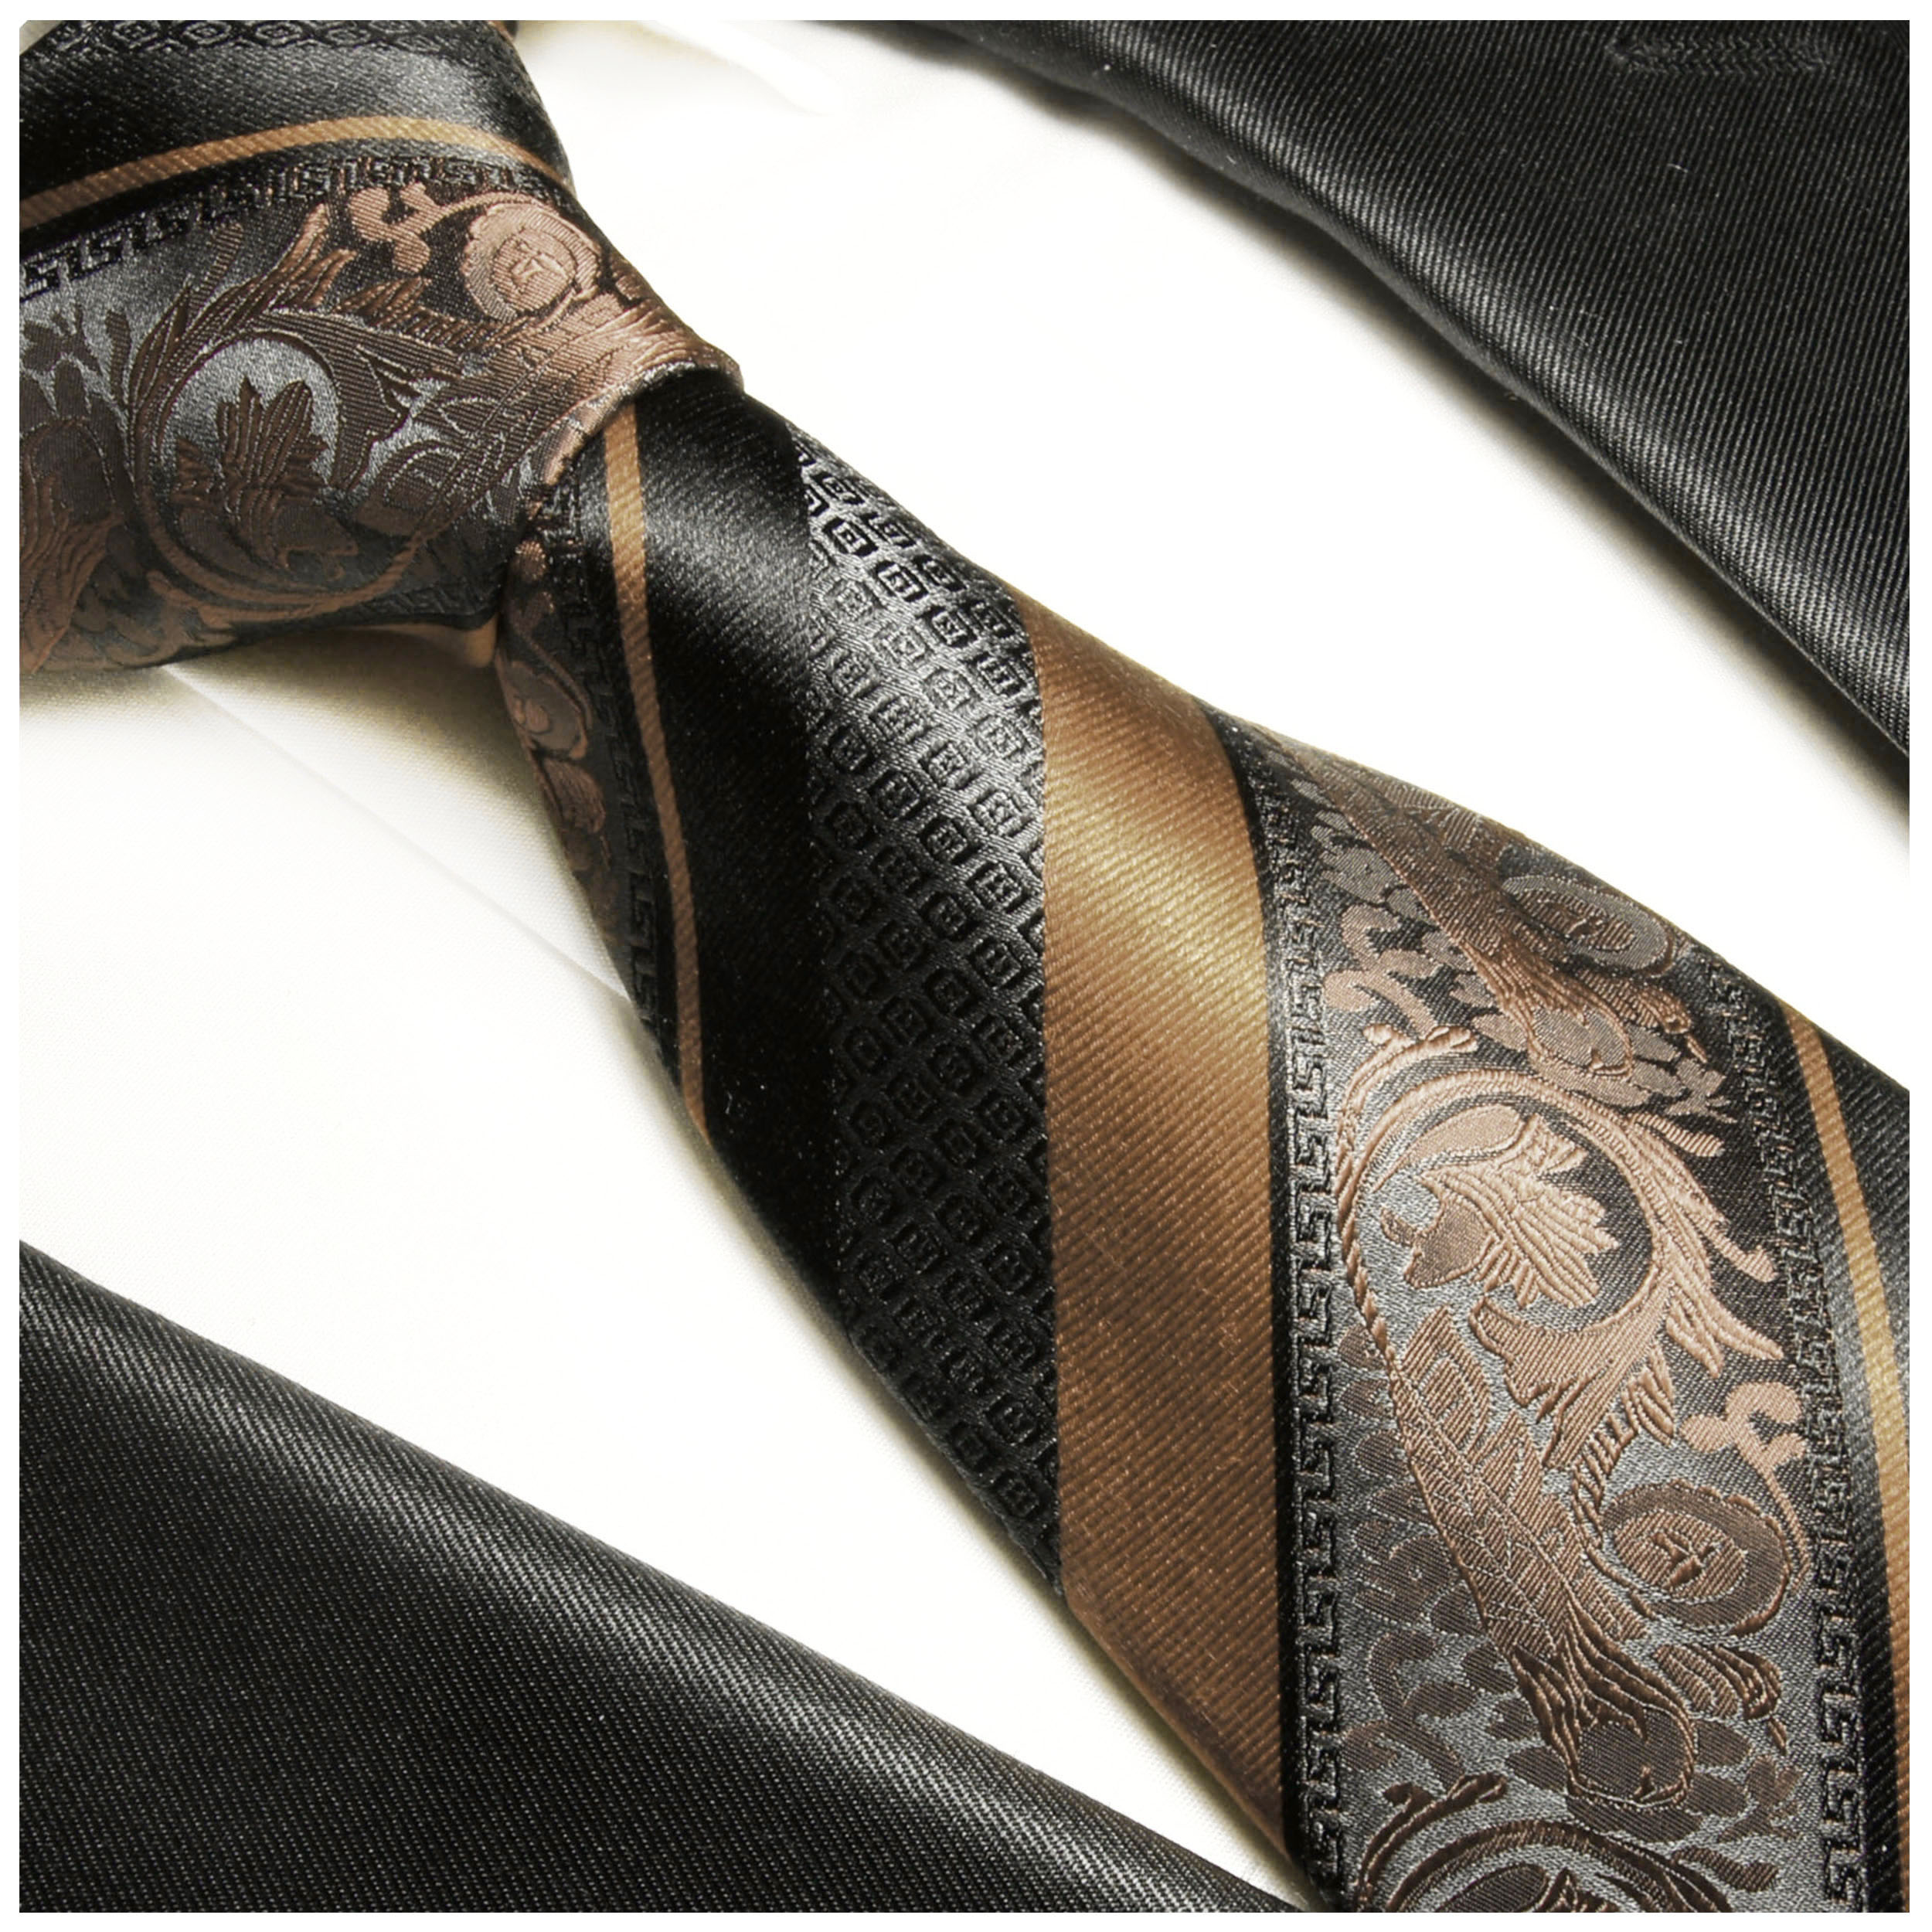 SHENGNONG Herren Krawatten-Set aus Polyester-Seide mit quadratischen Schal Manschettenknöpfen Krawattenklammer Geschenkbox